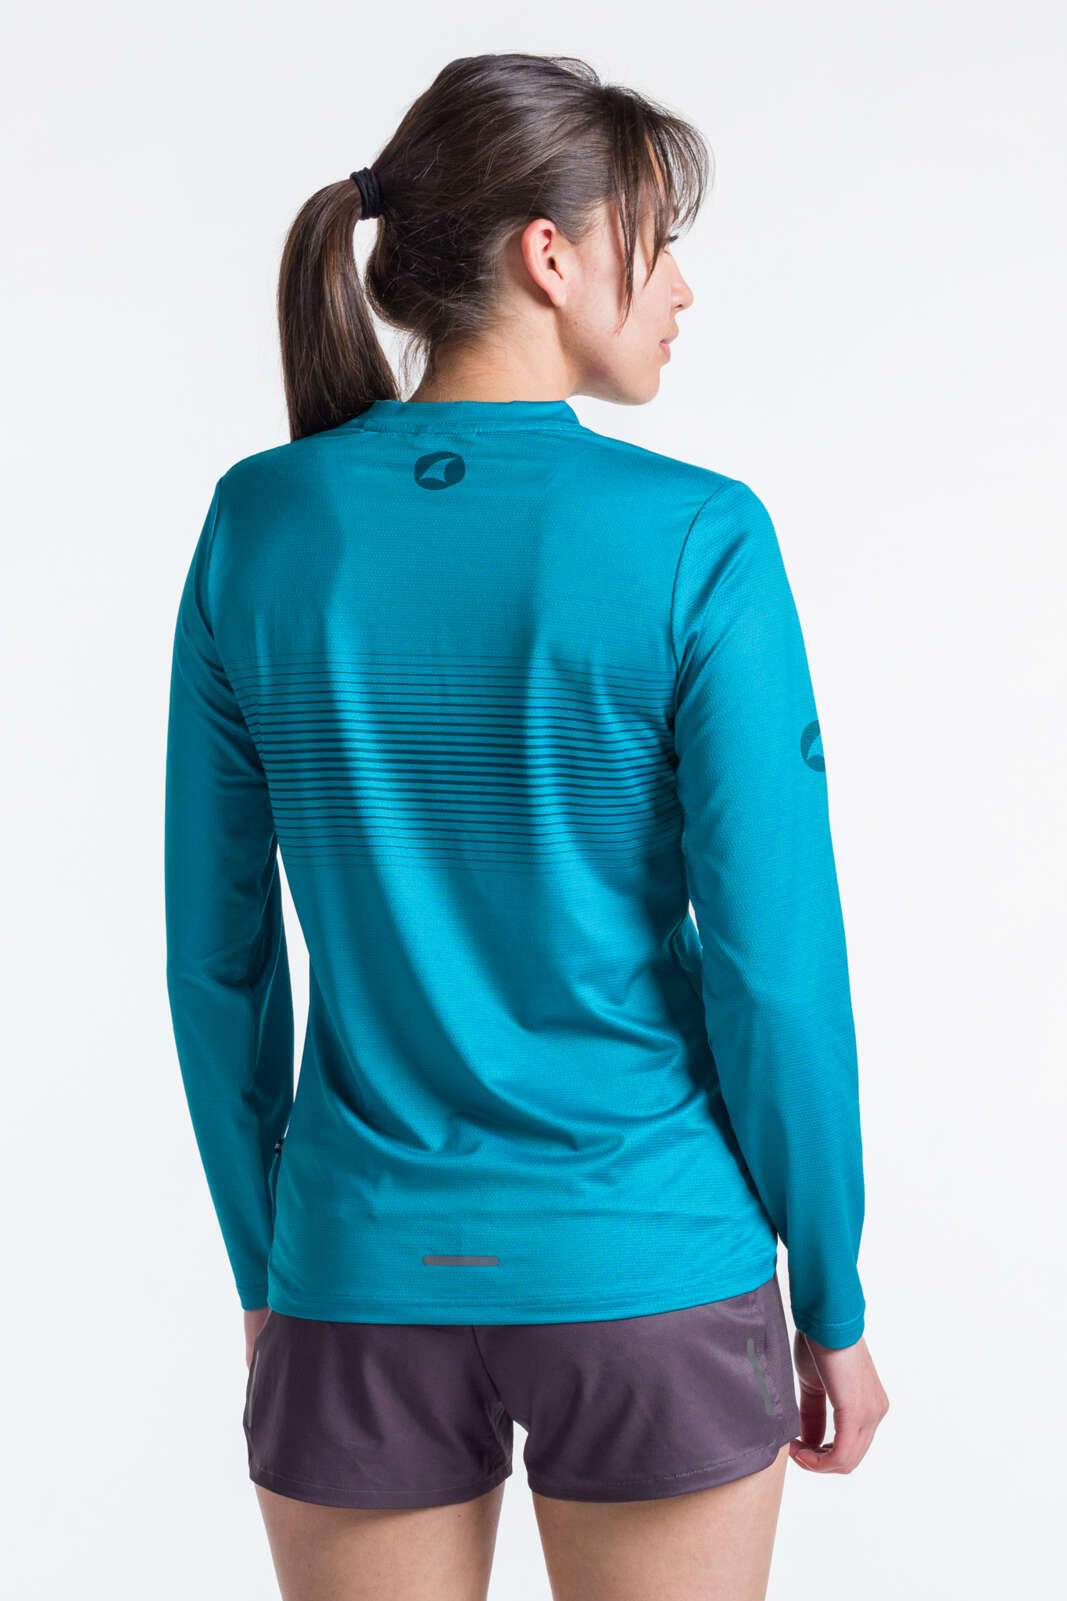 Women's Teal Long Sleeve Running Shirt - Back View